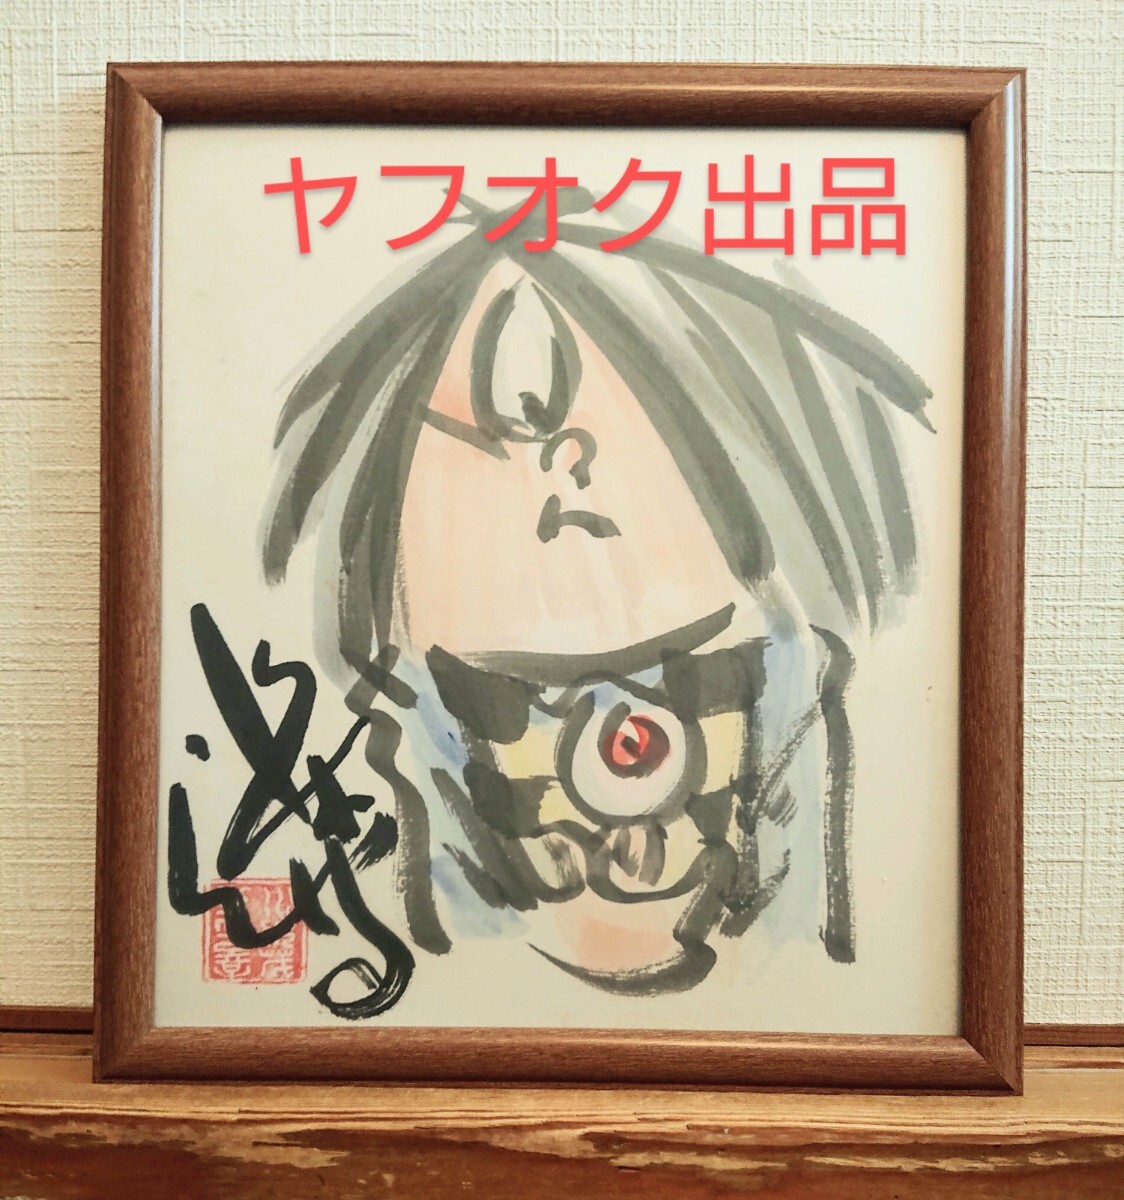 Shigeru Mizuki GeGeGe no Kitaro Signe Papier coloré Aquarelle, des bandes dessinées, produits d'anime, signe, Peinture dessinée à la main